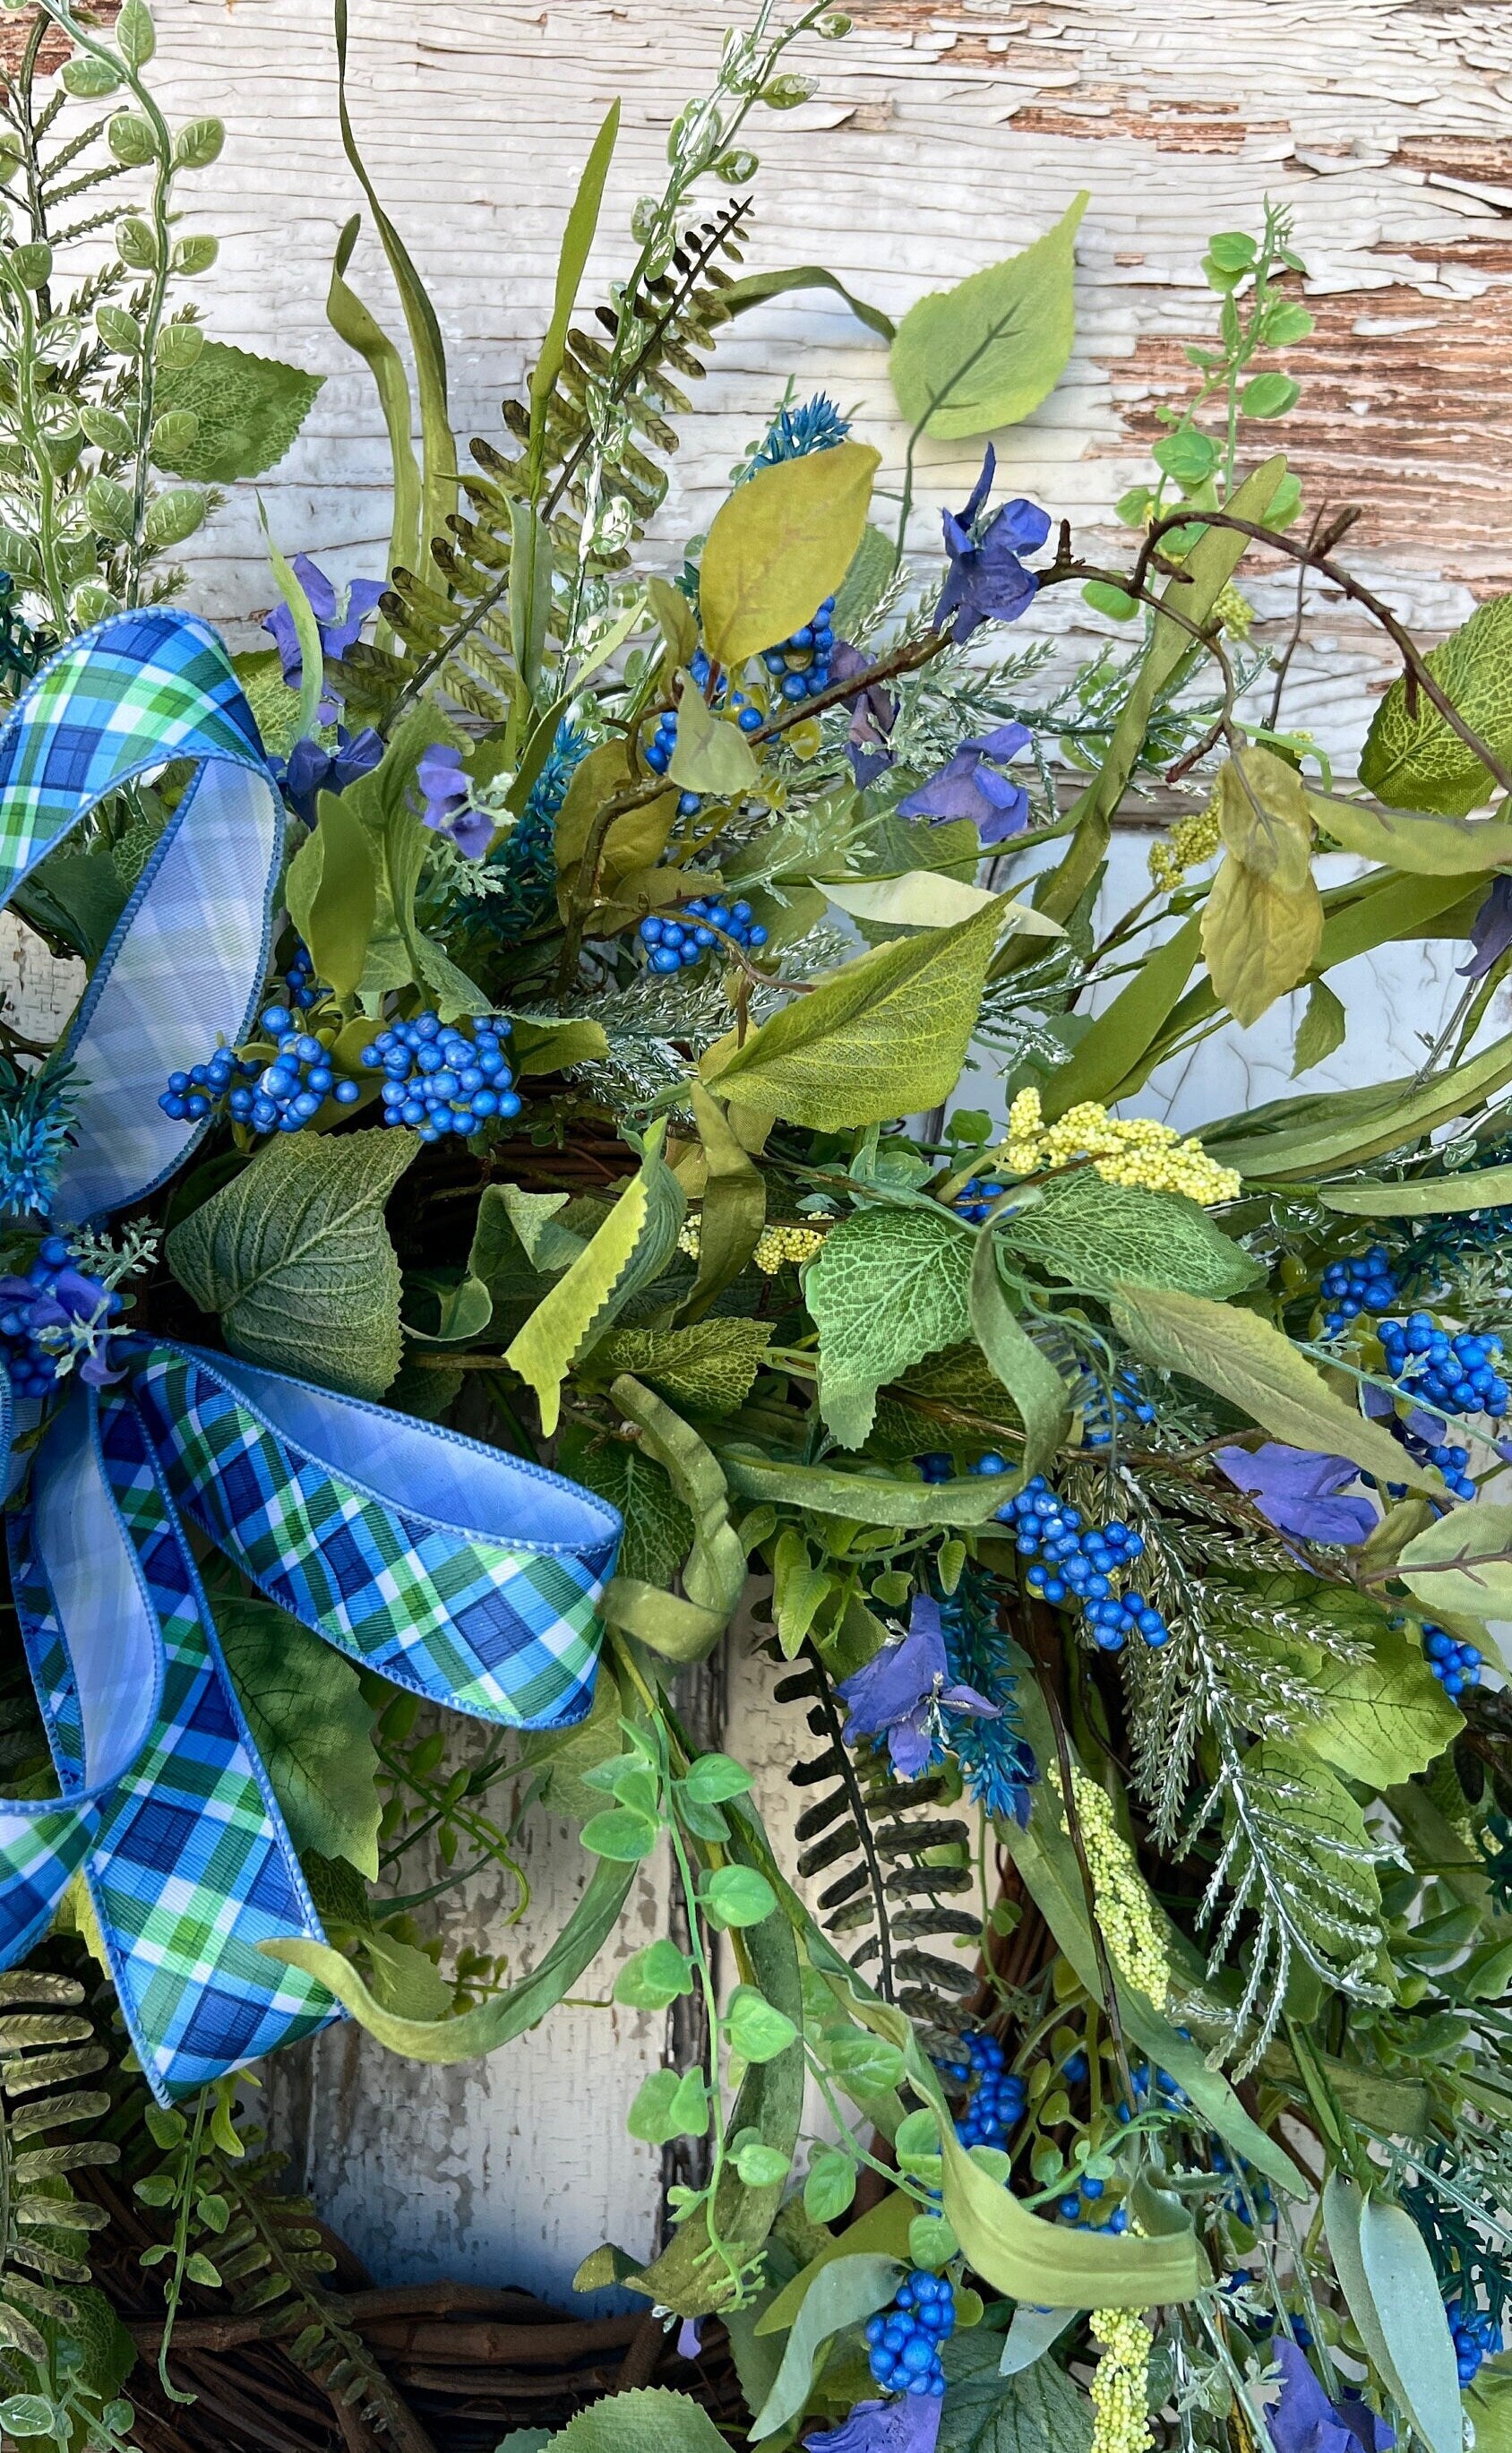 Spring Wreath for front door, Everyday wreath, Year round wreath for front door, Housewarming Gift, Spring Decor, Summer Decor, Home Decor,